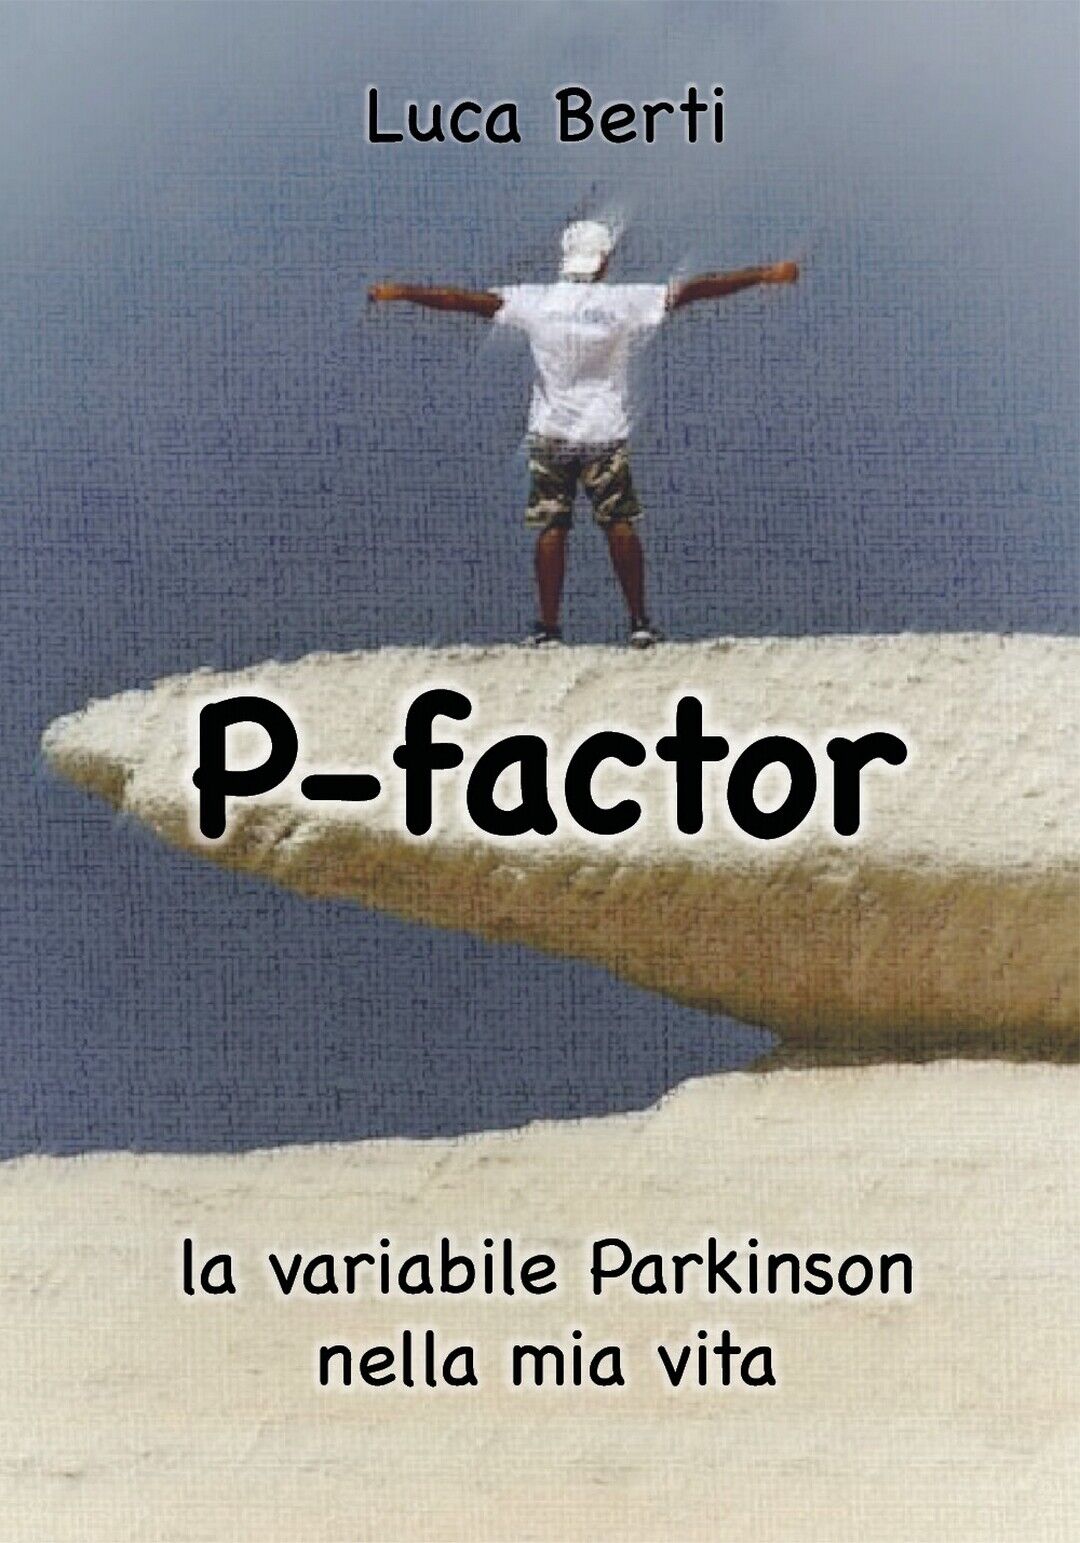 P Factor - la variabile Parkinson nella mia vita, Luca Berti,  2020,  Youcanprin